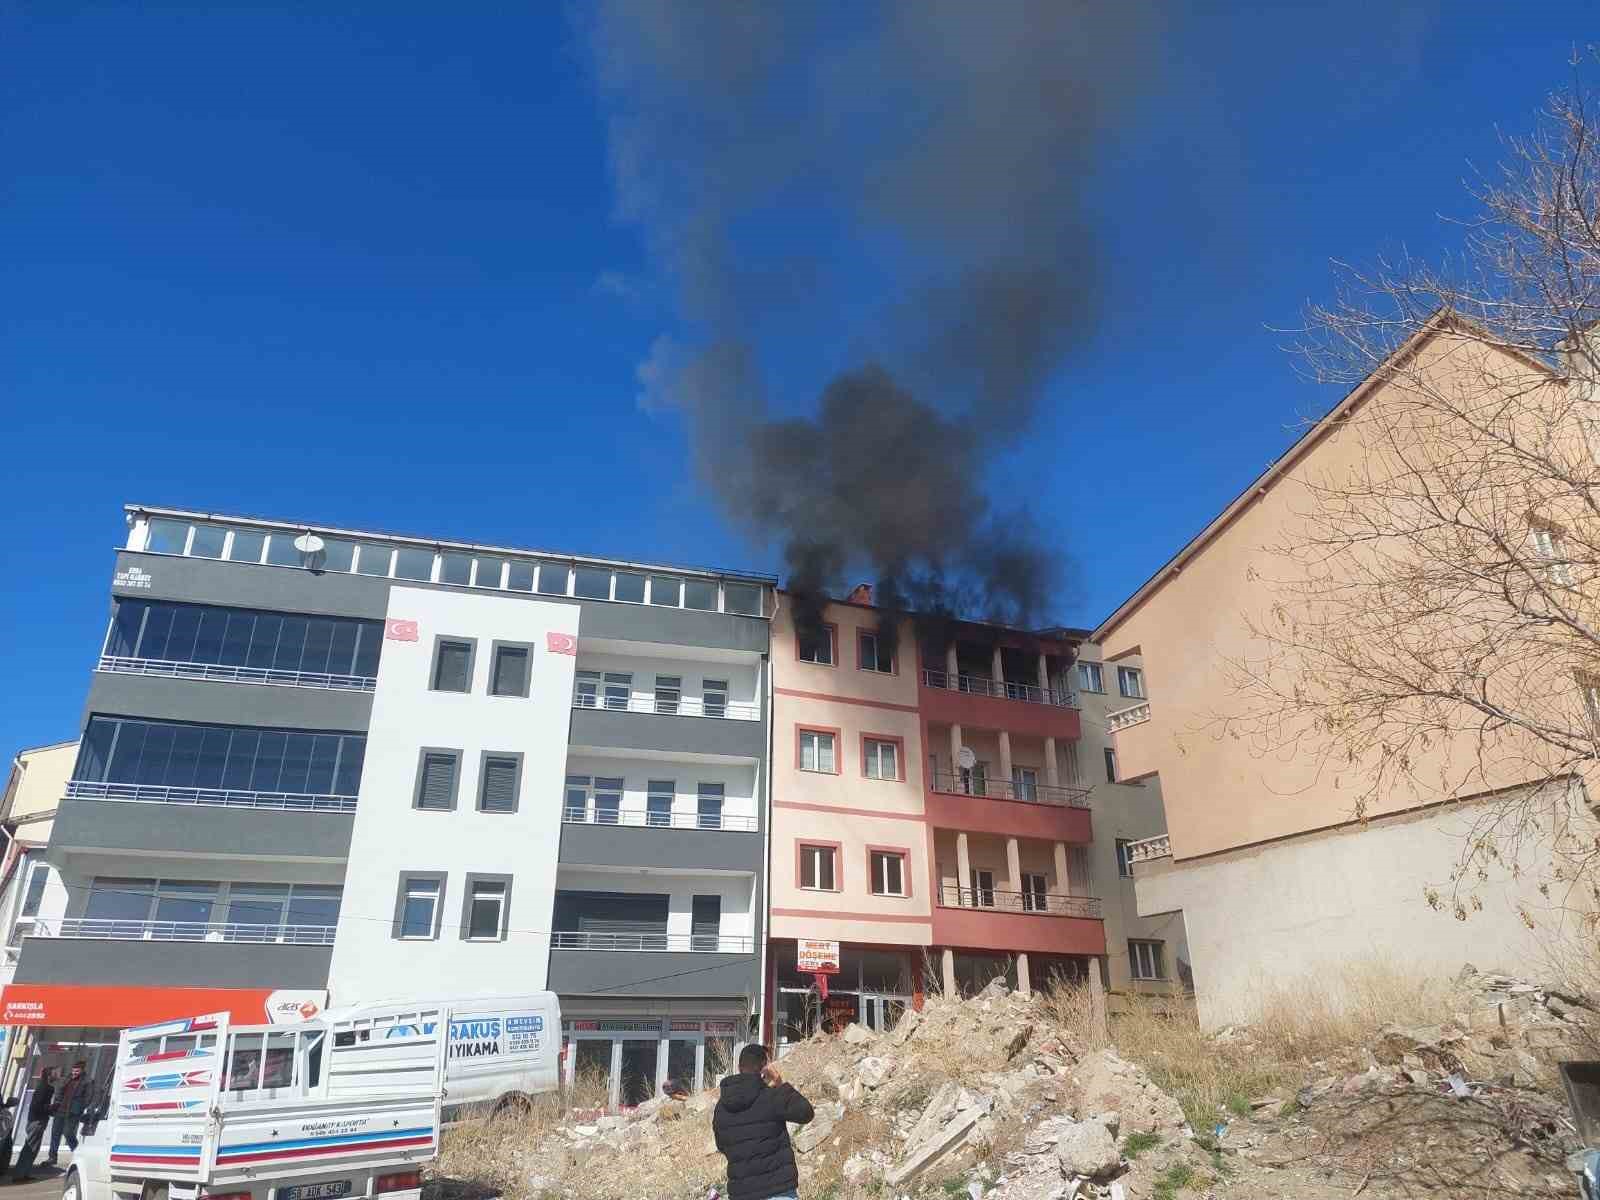 Sivas’ta ev yangını, dumandan etkilenen 3 kişi kurtarıldı
